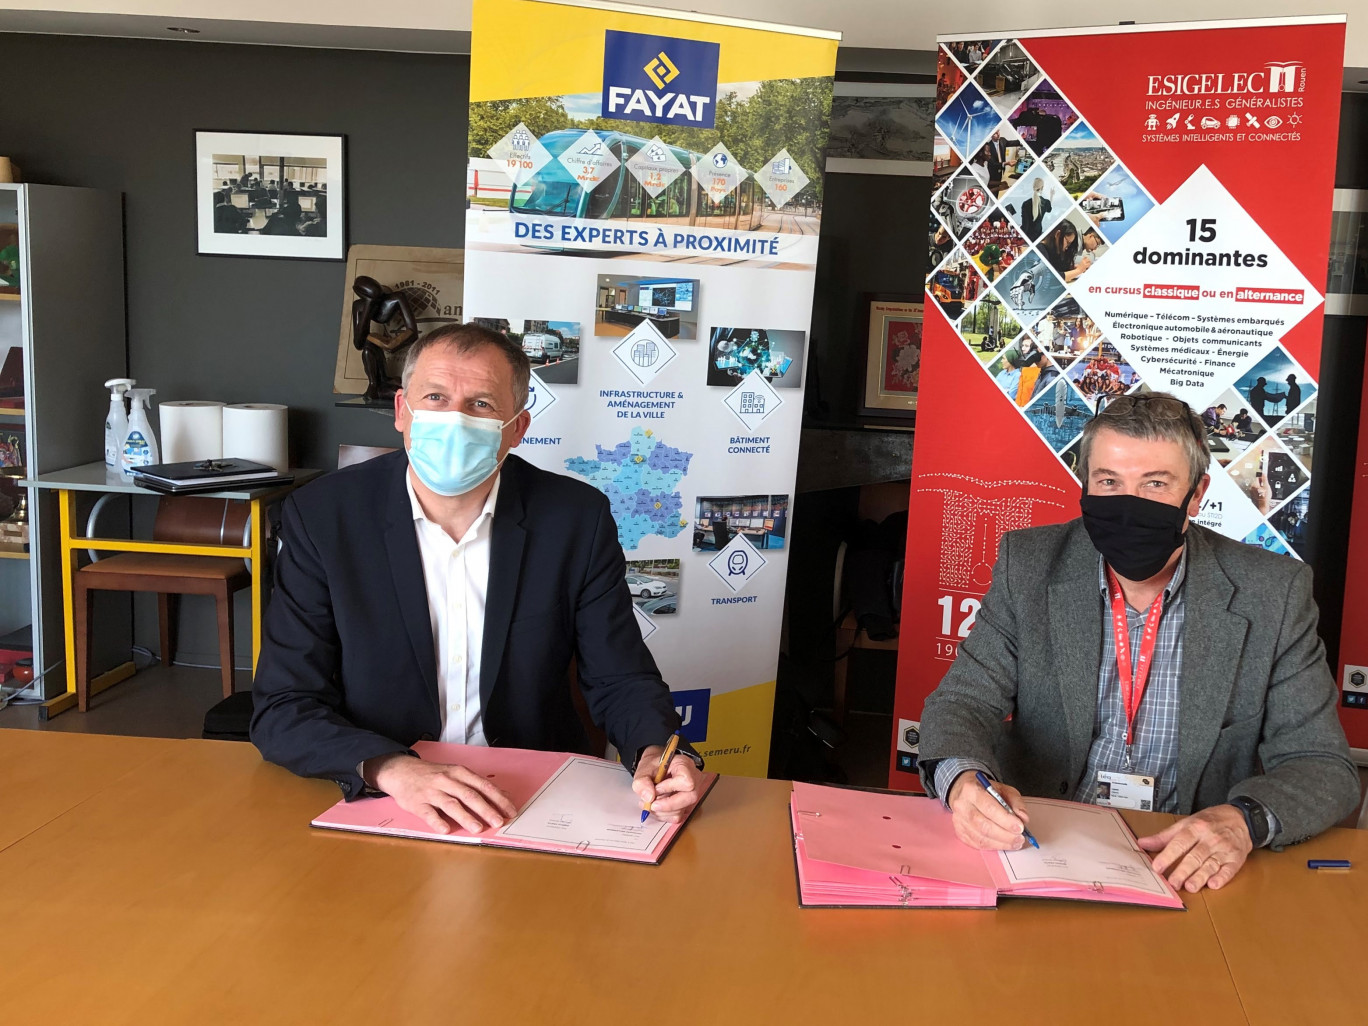 L’Esigelec a signé une convention de partenariat avec la société Semeru-Fayat Energie Services. (Photo Esigelec)